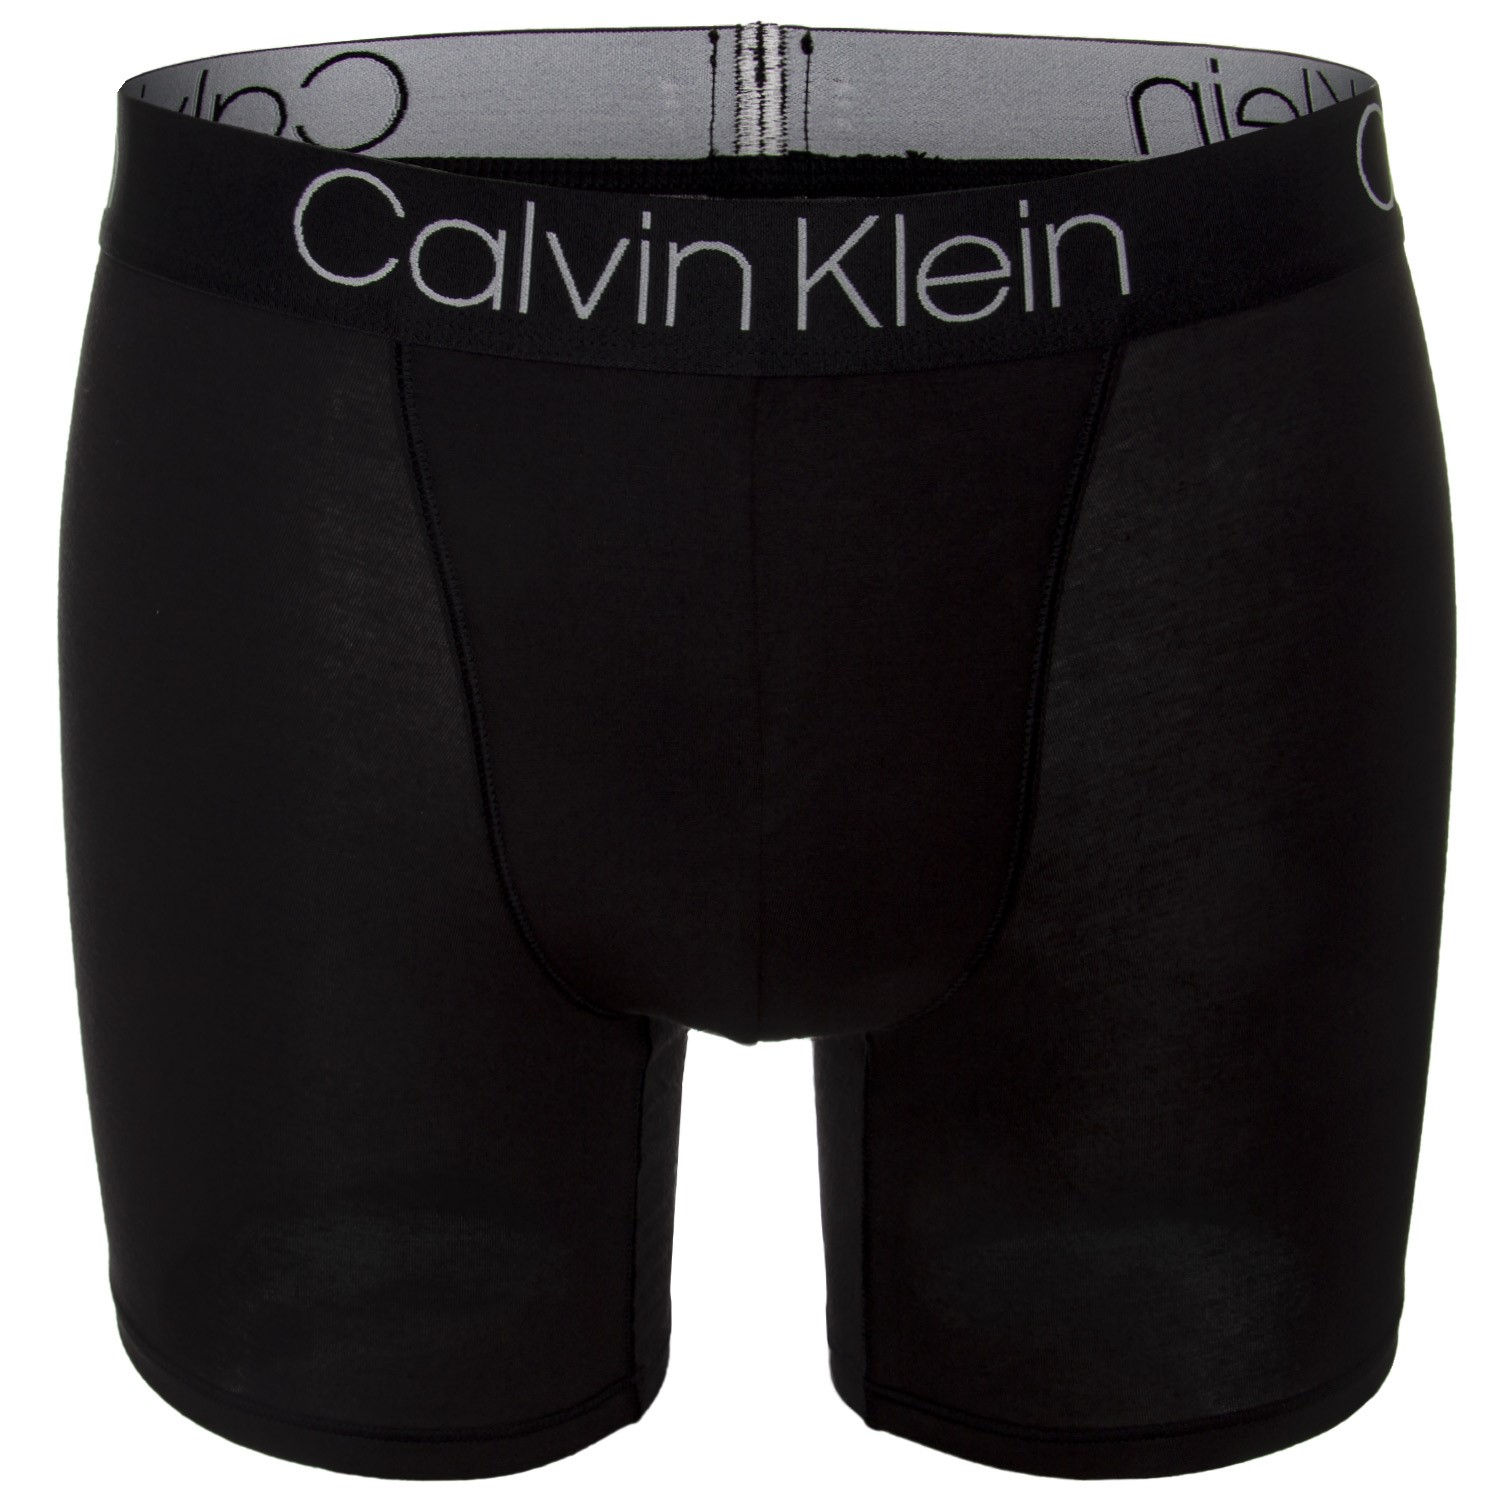 Calvin Klein Luxe Cotton Modal Boxer Brief